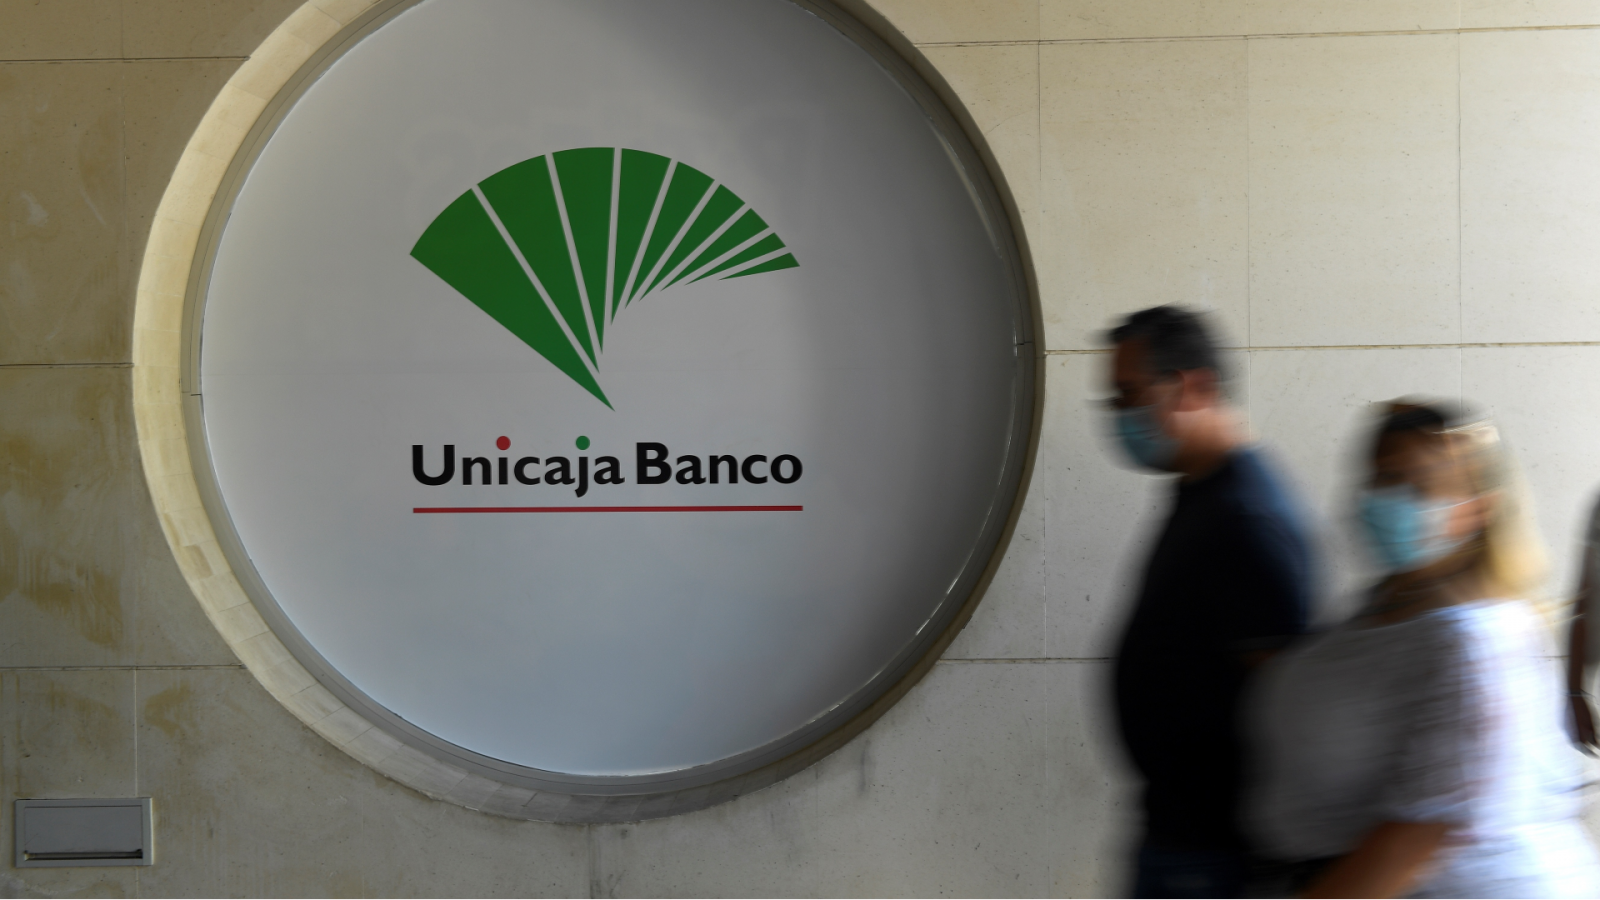 Logotipo de Unicaja Banco en el estand de la Feria de muestras en Gijón, el pasado mes de agosto.